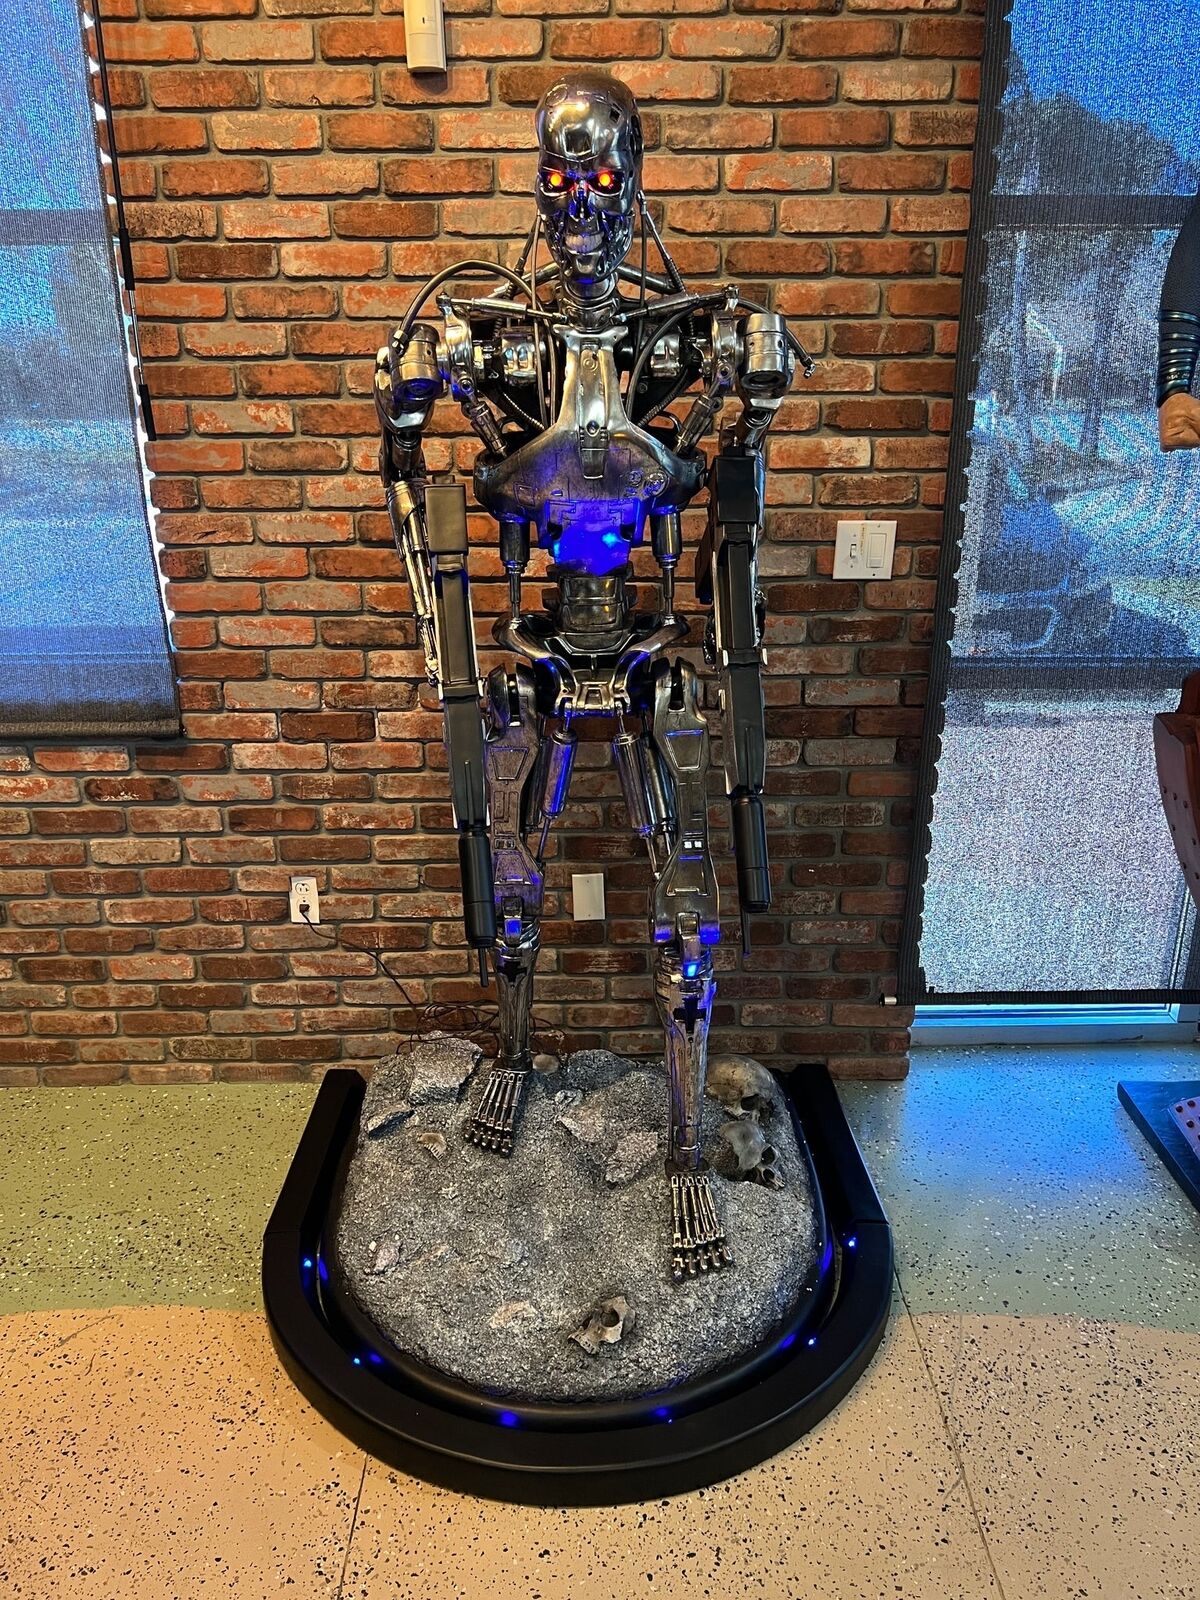 SideShow Terminator T-800 Endoskeleton Life Size Statue 1:1 Prop